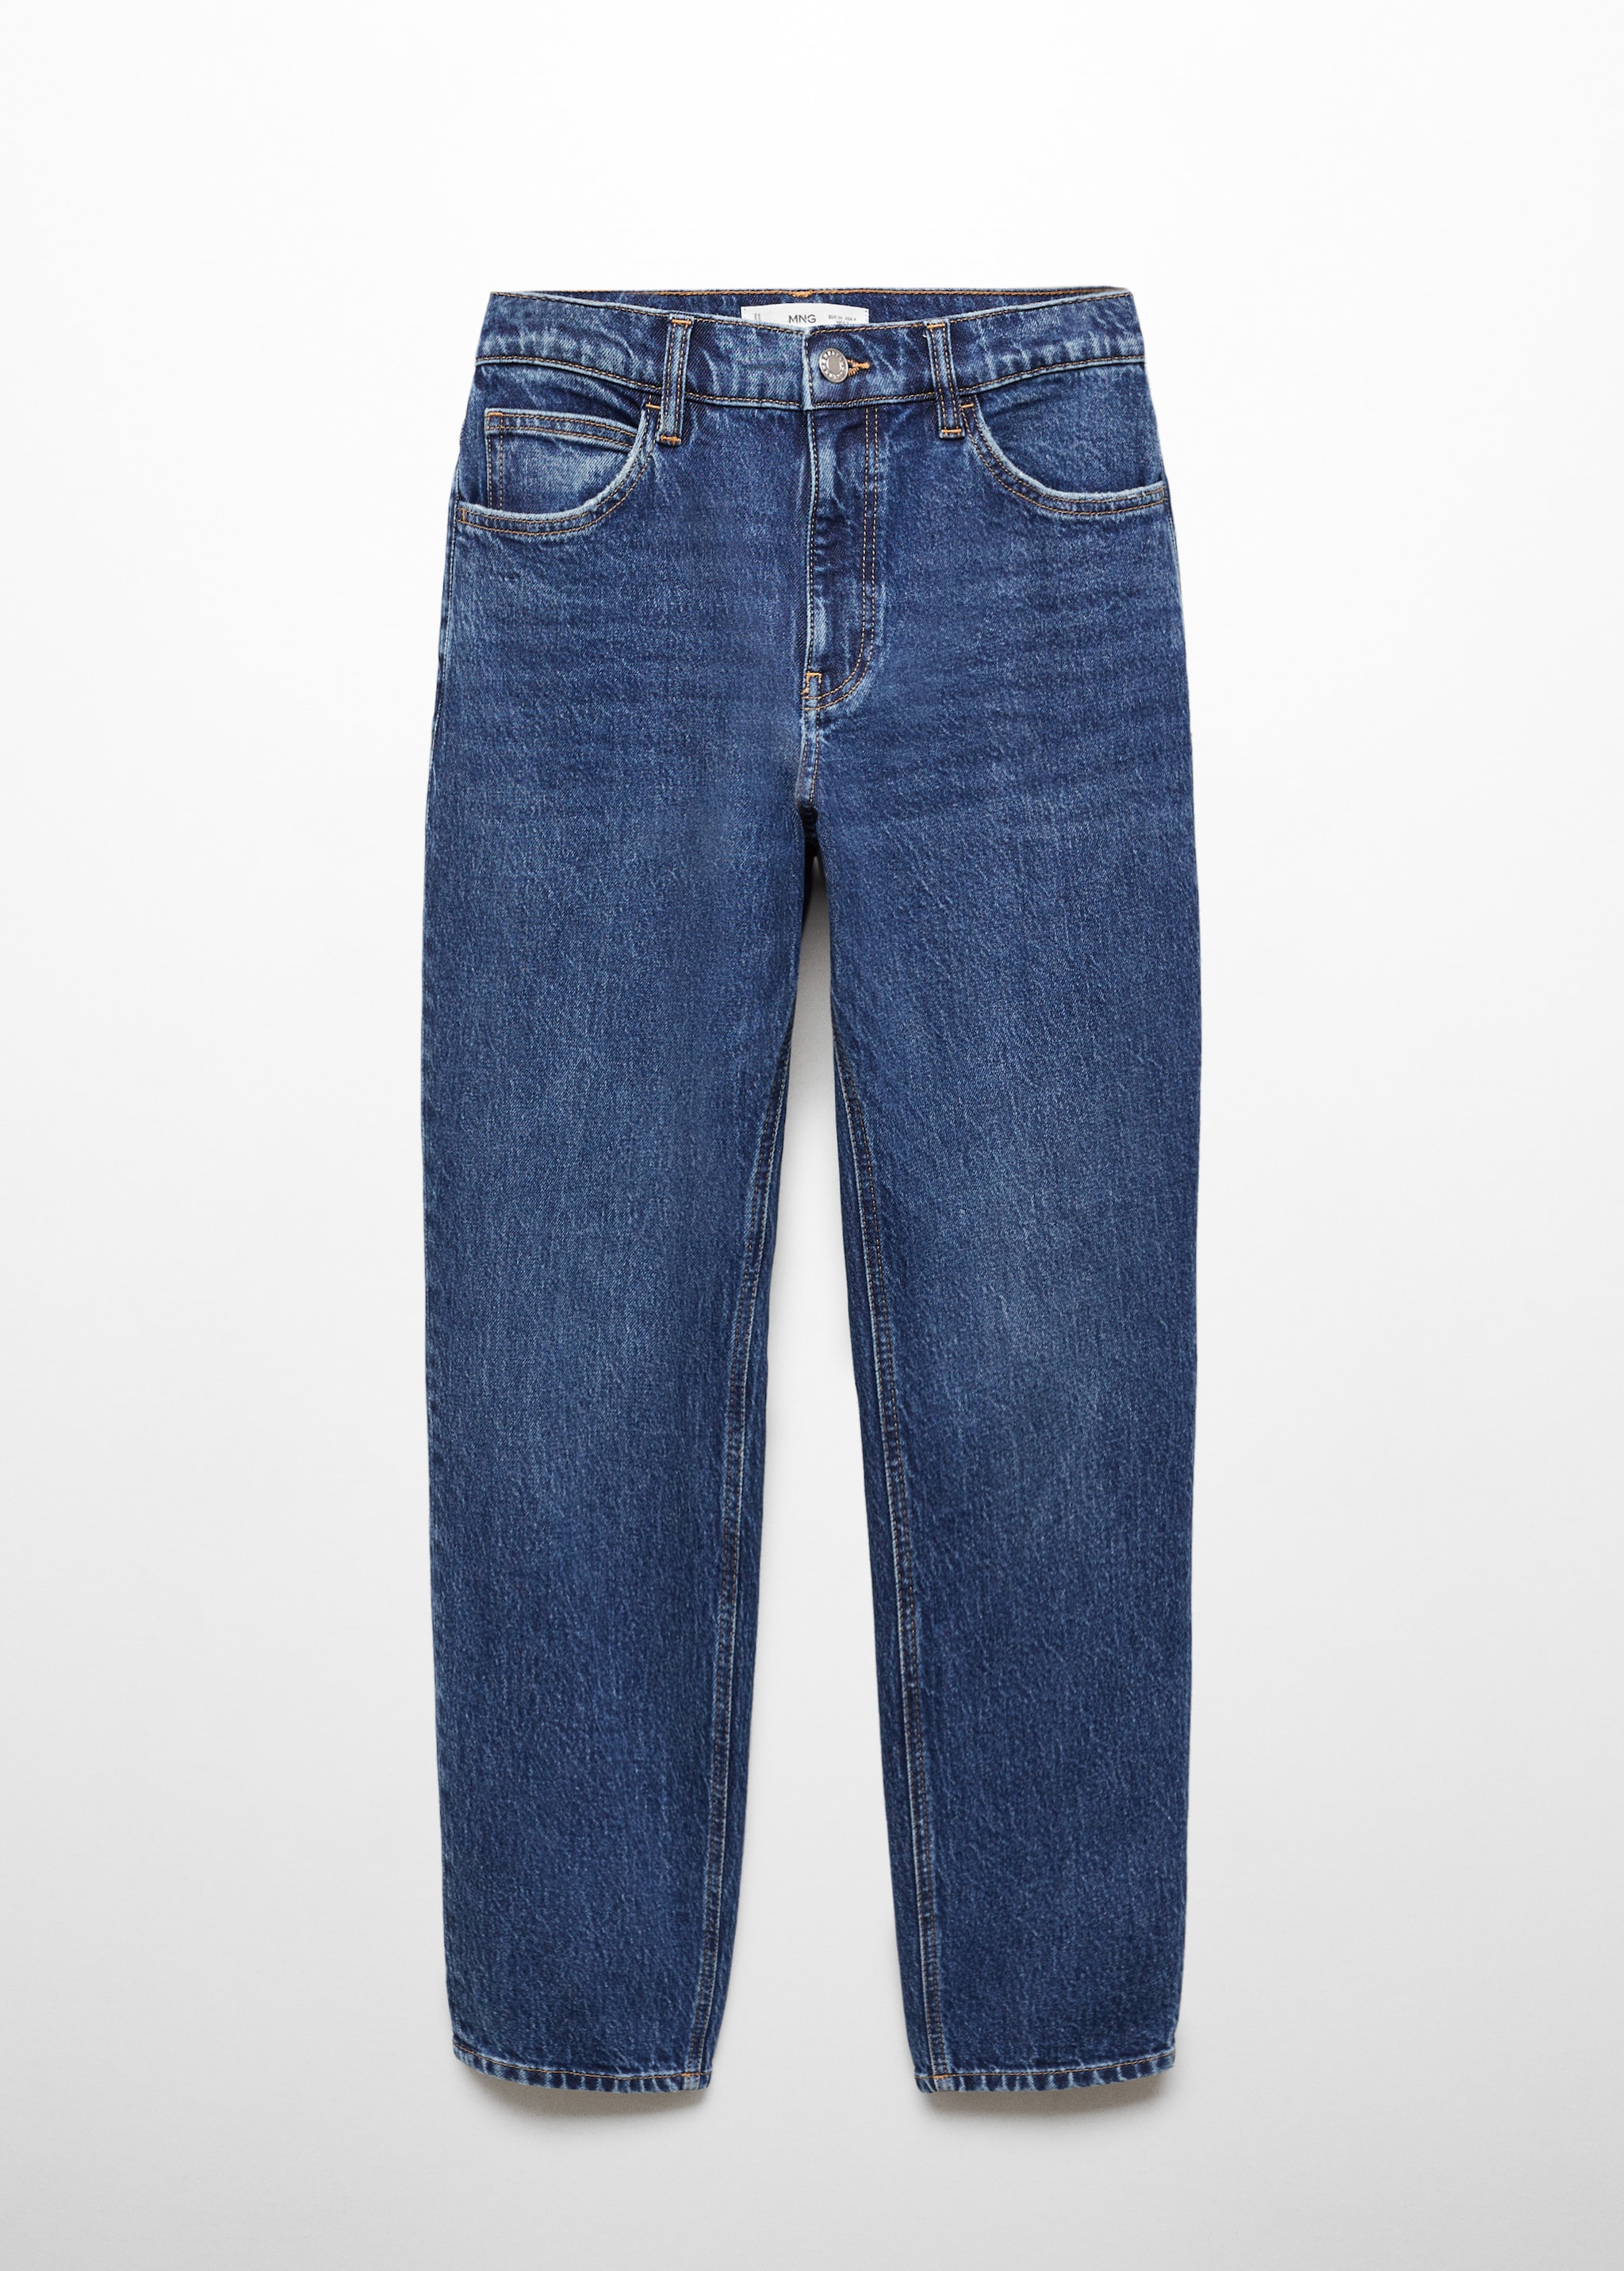 Комфортные джинсы mom с завышенной талией - Изделие без модели